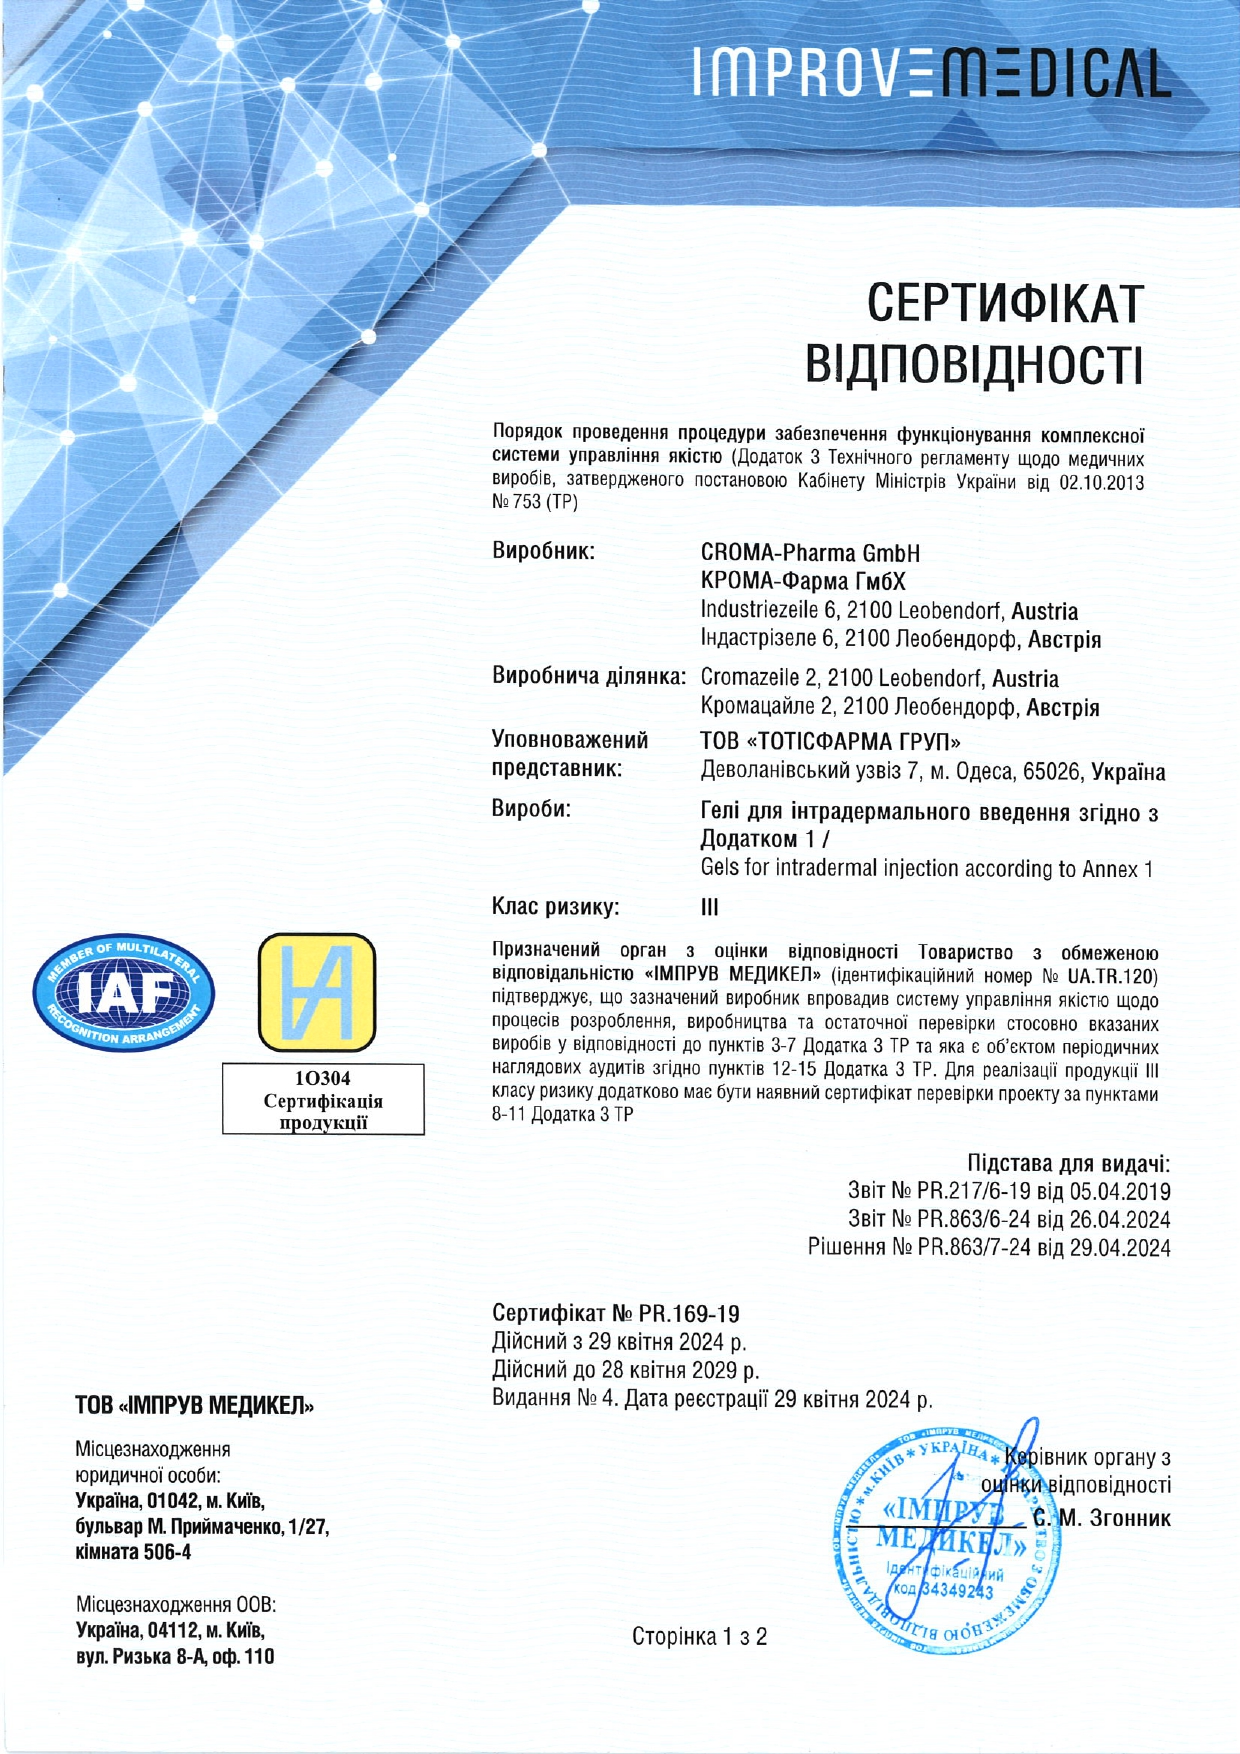 Сертификат препаратов Croma